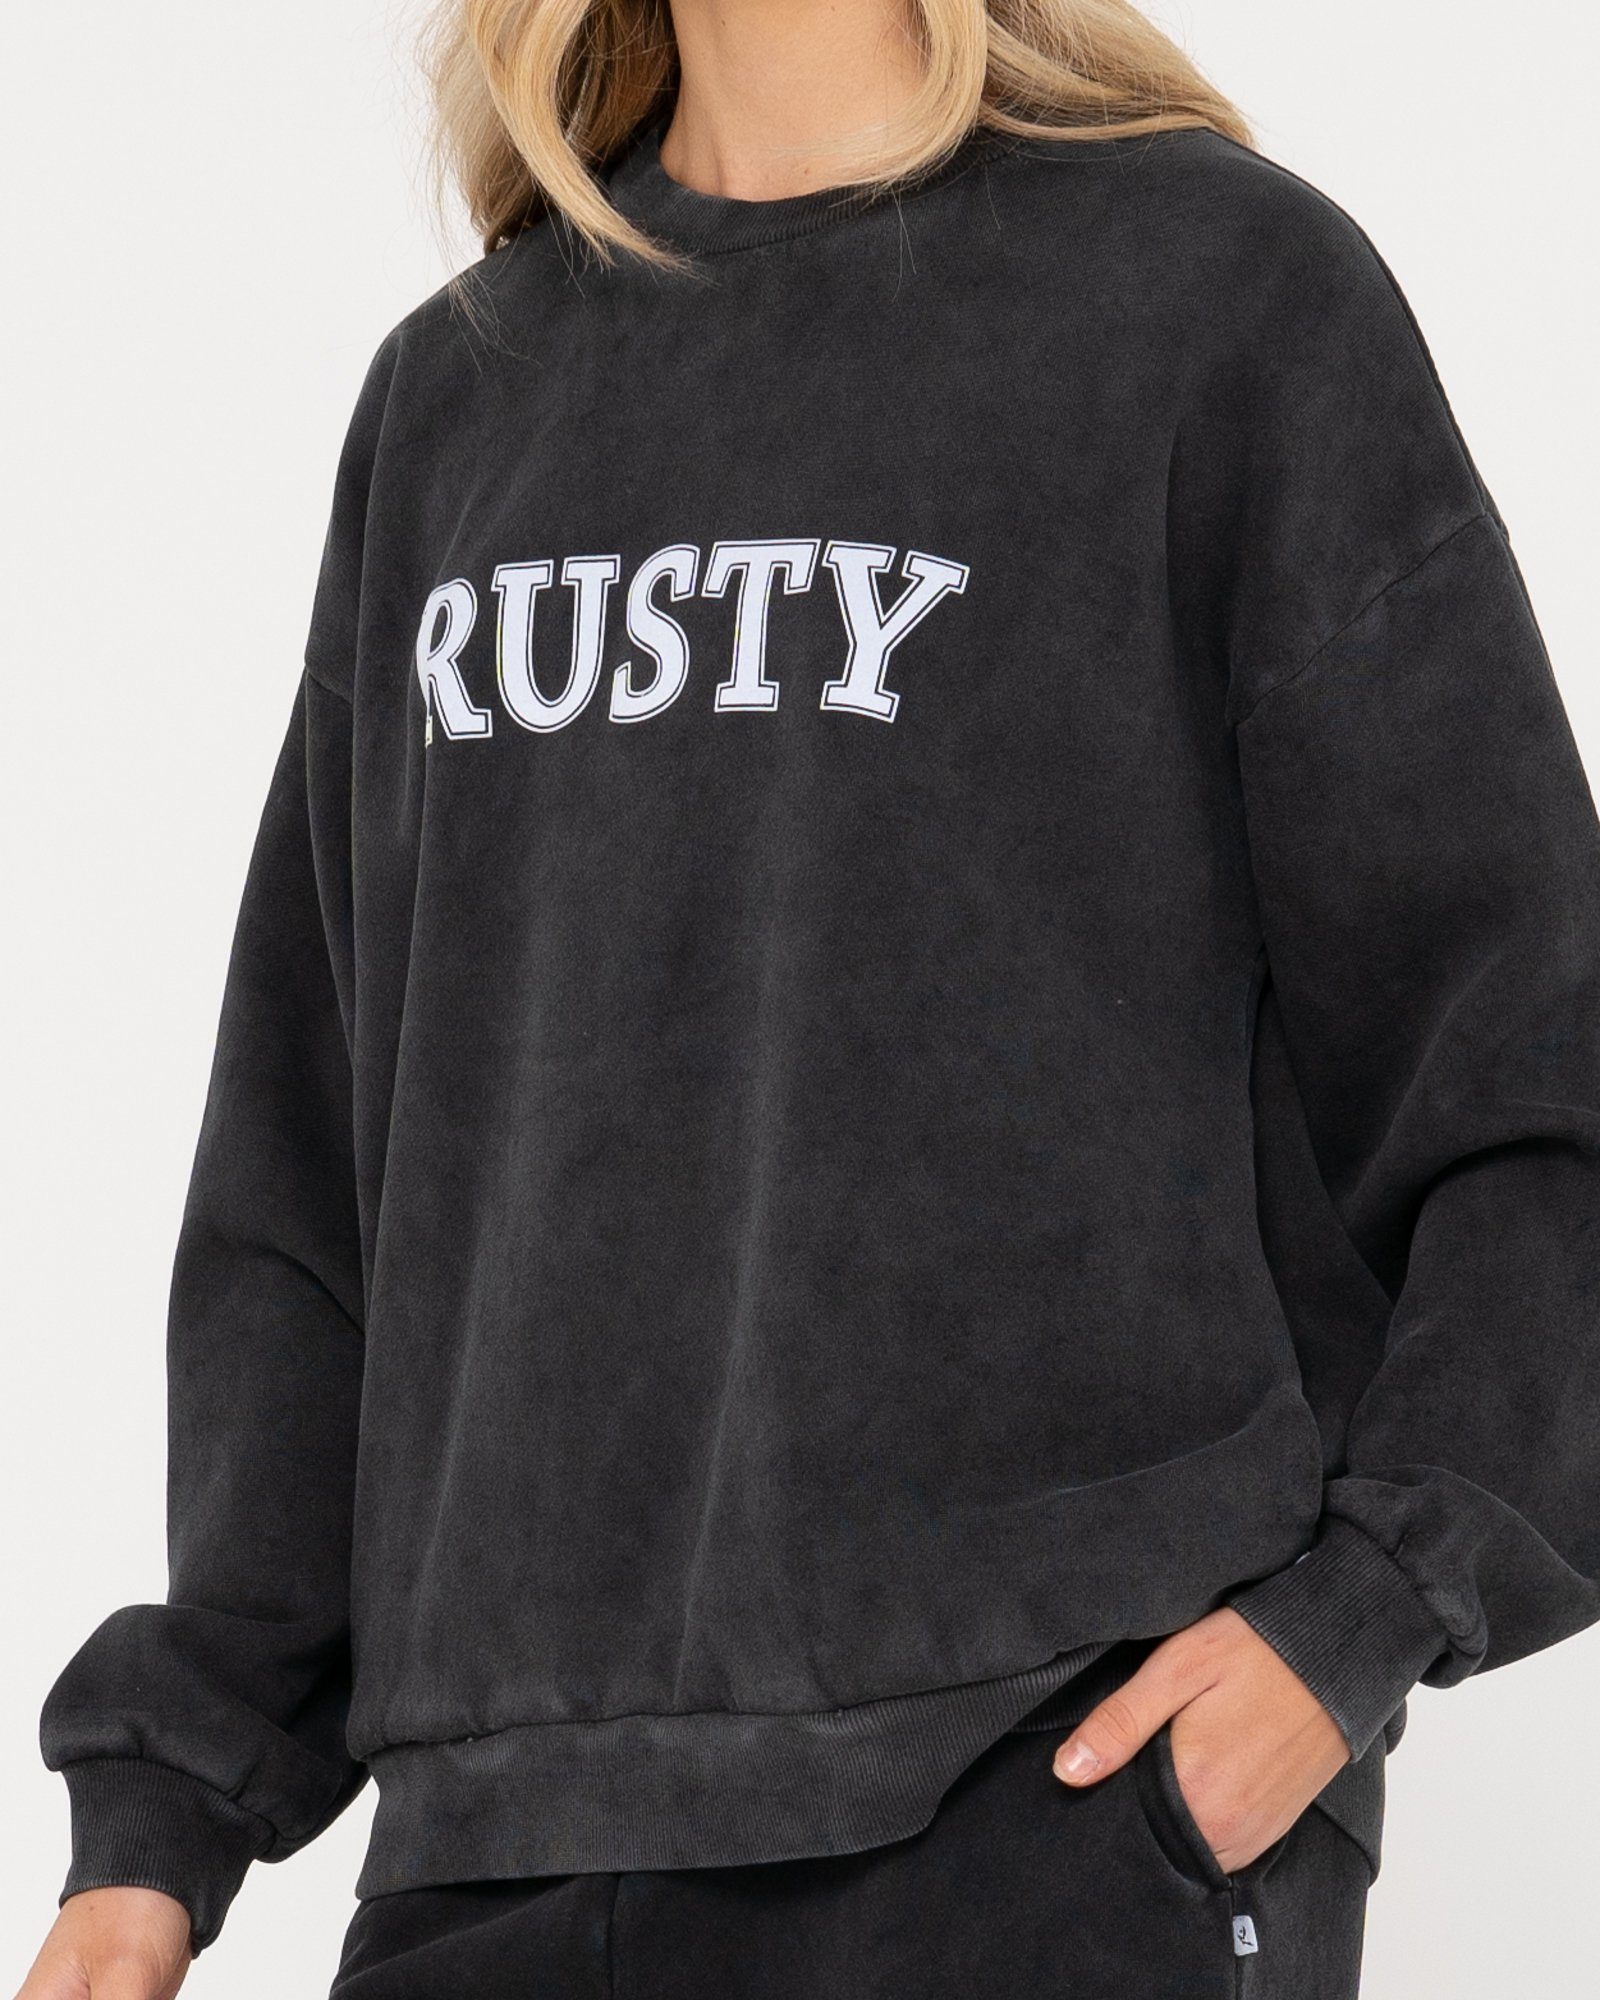 Rusty Sweatshirt RUSTY OVERSIZE CREW FLEECE